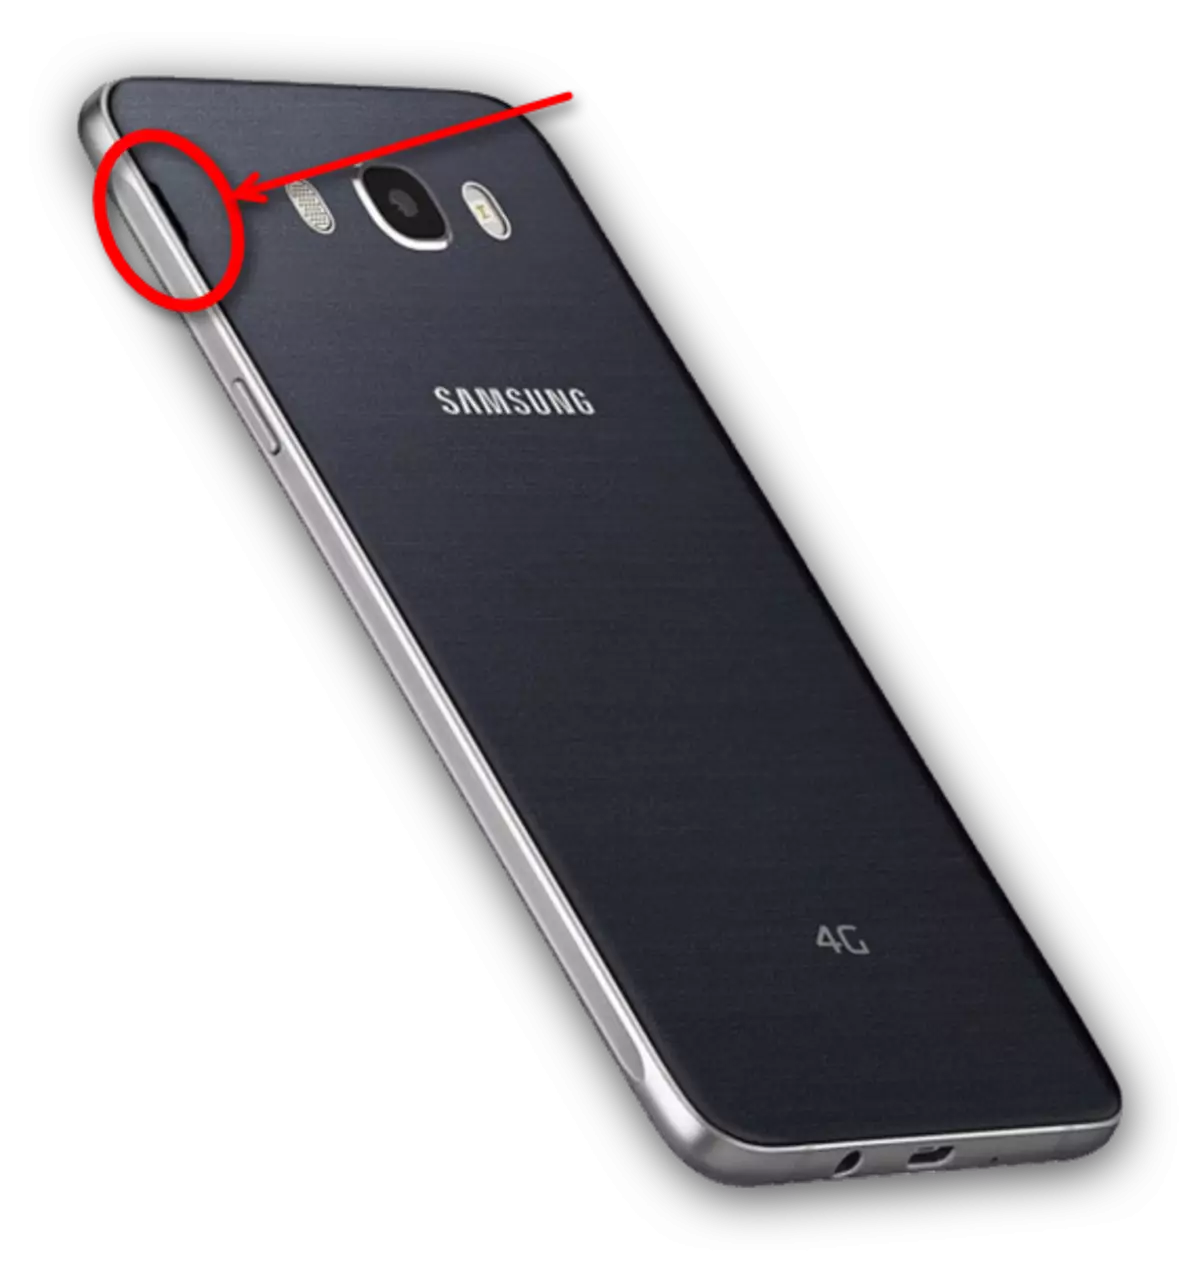 Samsung SmartPhone нь ховил нээх